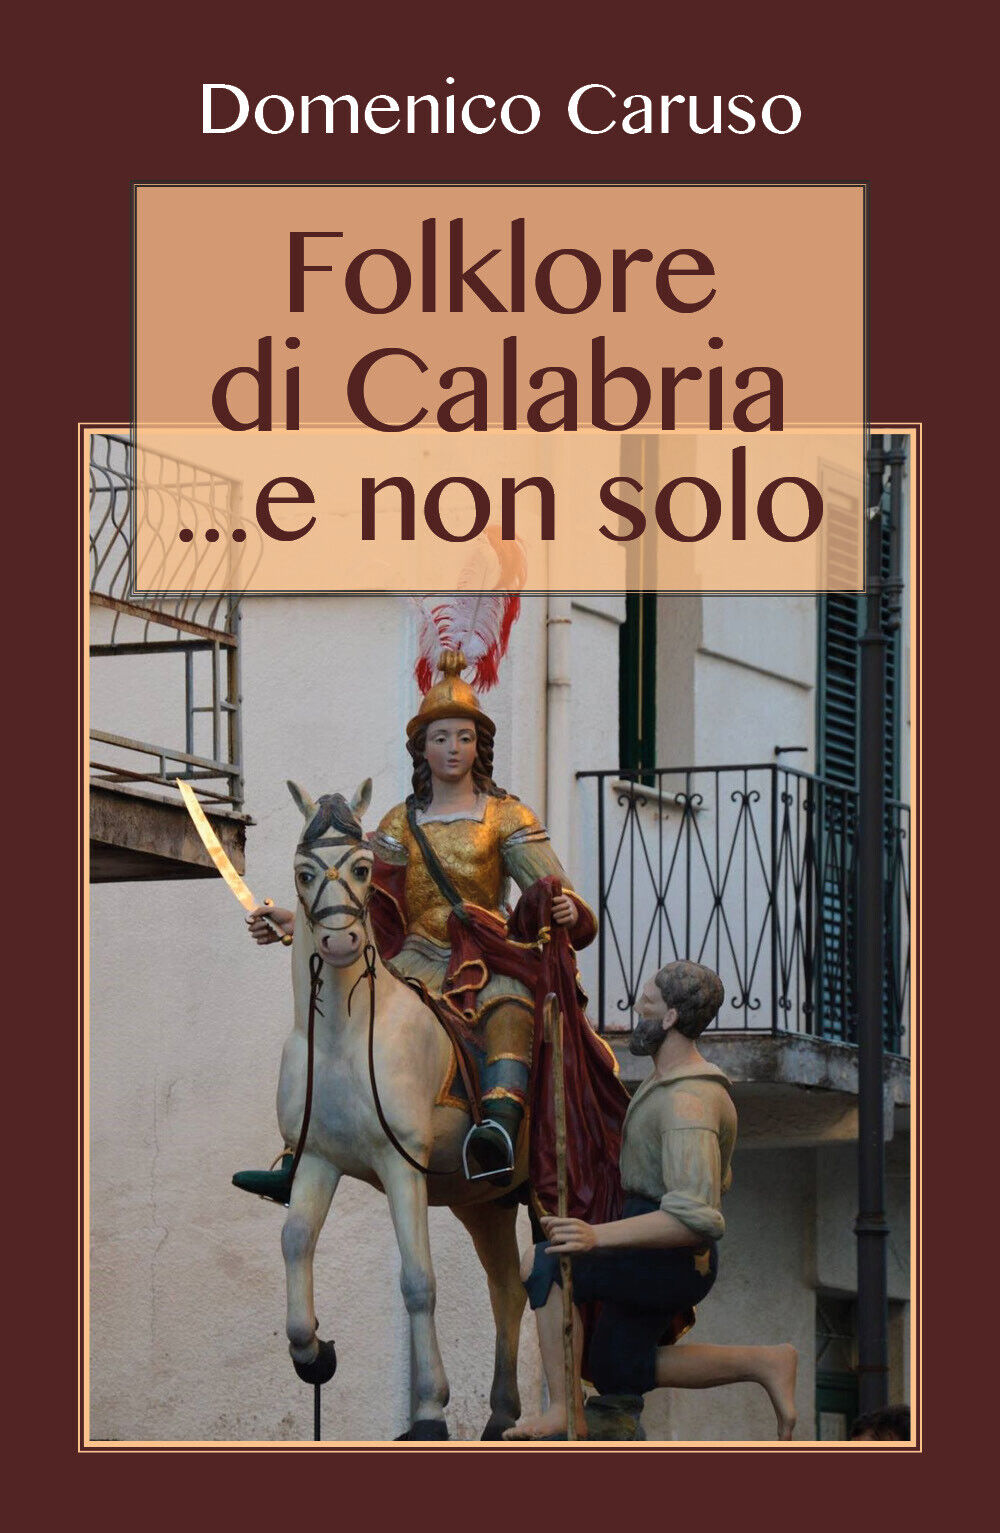 Folklore di Calabria... e non solo - Domenico Caruso,  2017,  Youcanprint